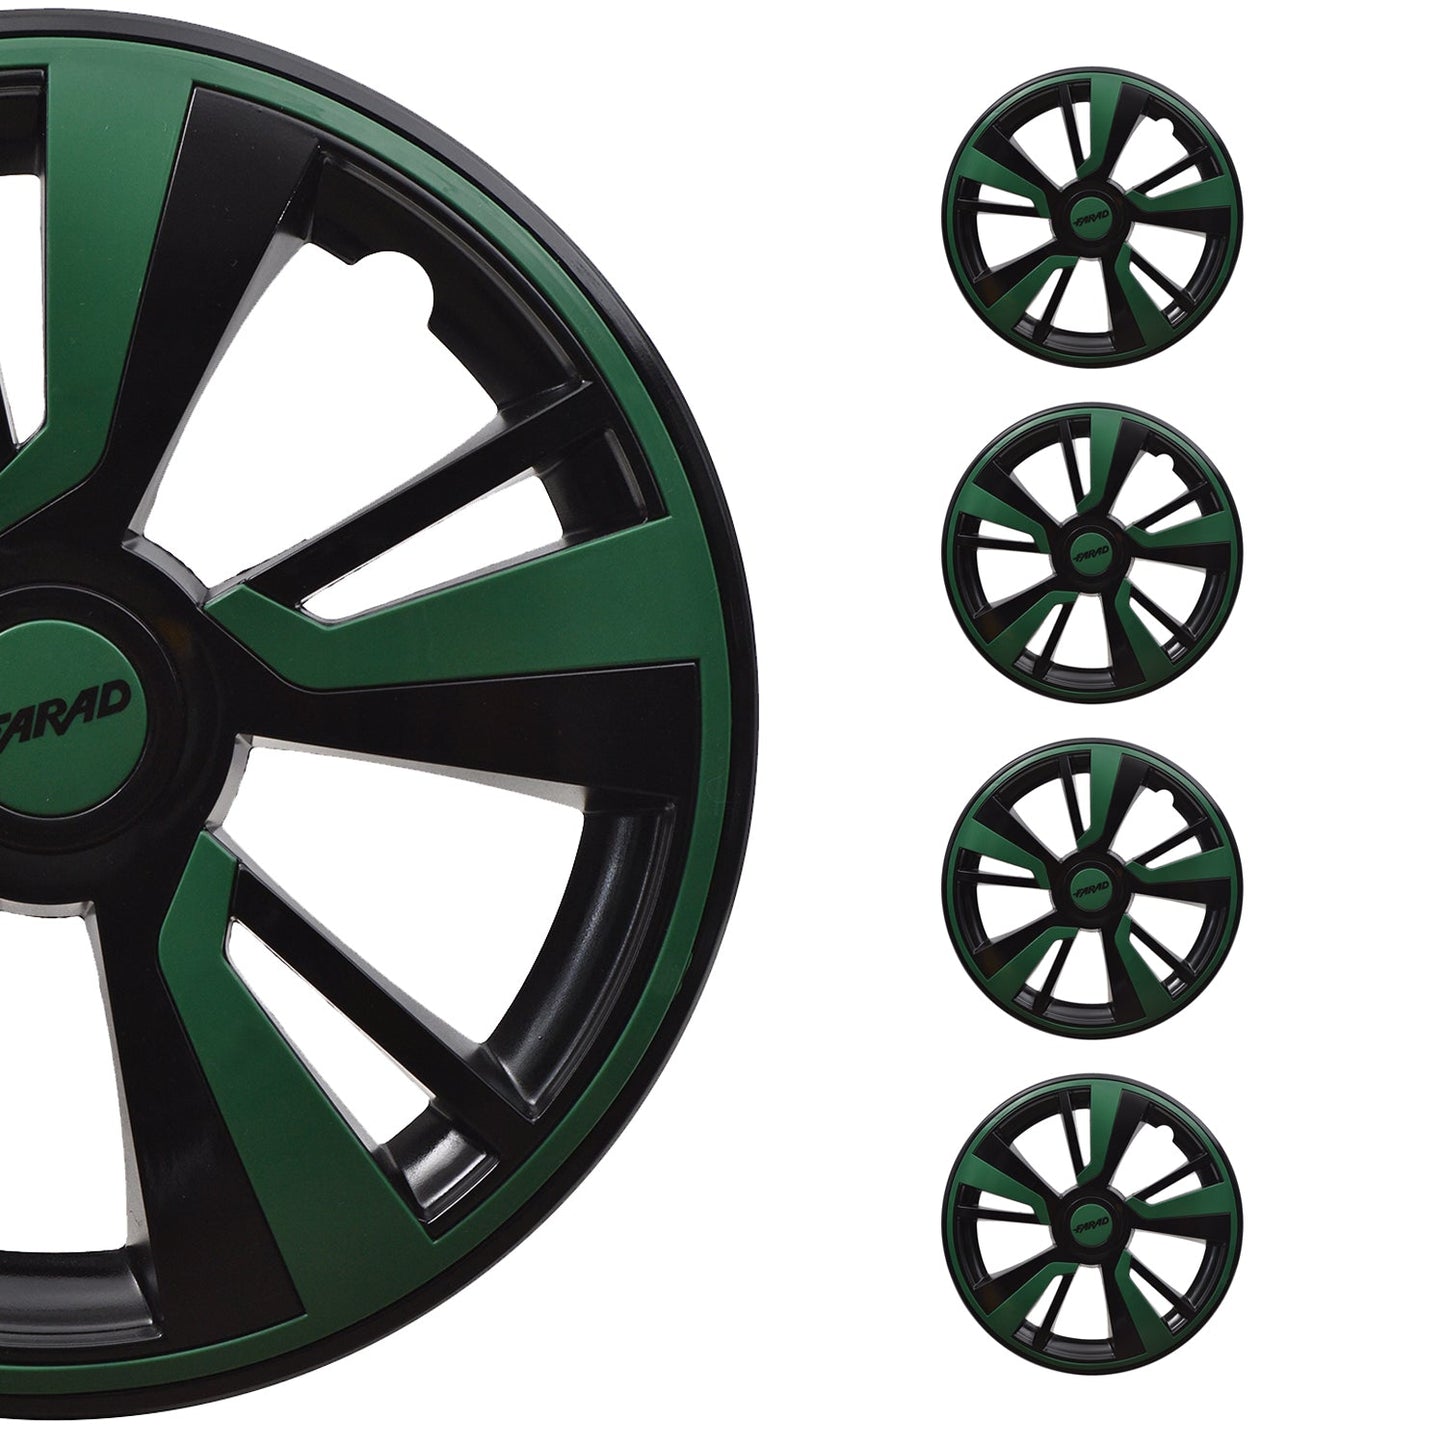 OMAC 16" Hubcaps Wheel Rim Cover Black & Green Insert 4pcs Set VRT99FR243B16G